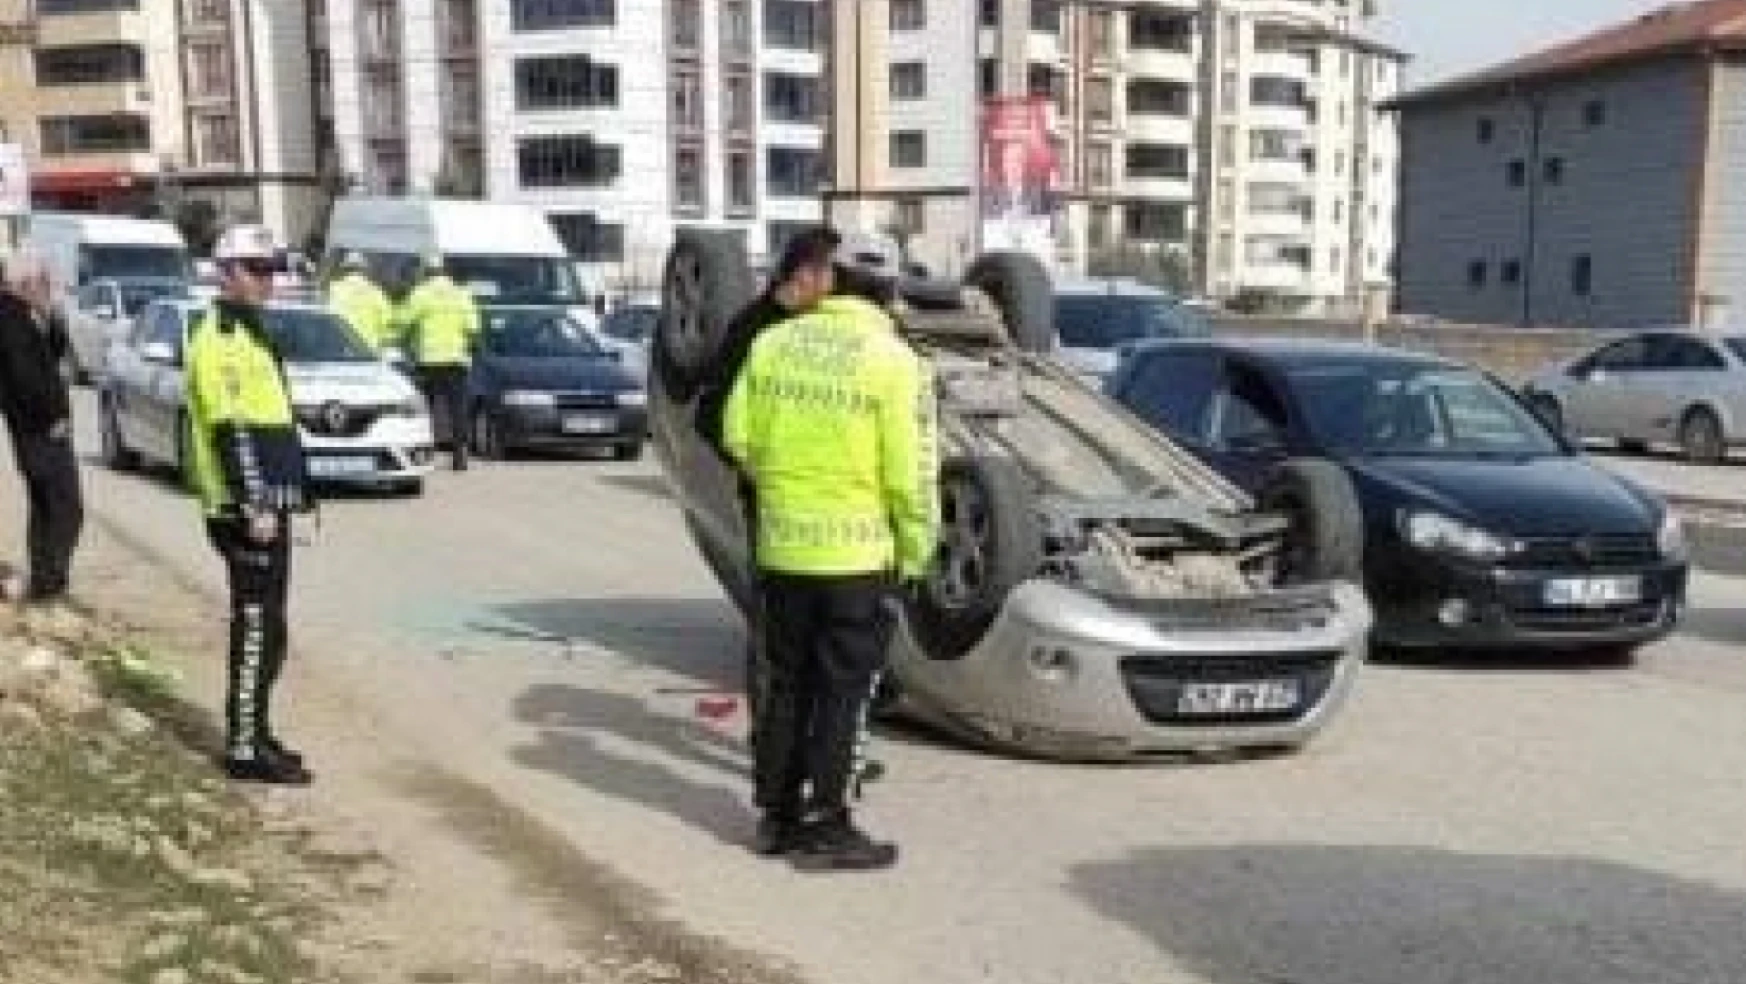 Elazığ'da otomobil ters döndü: 1 yaralı